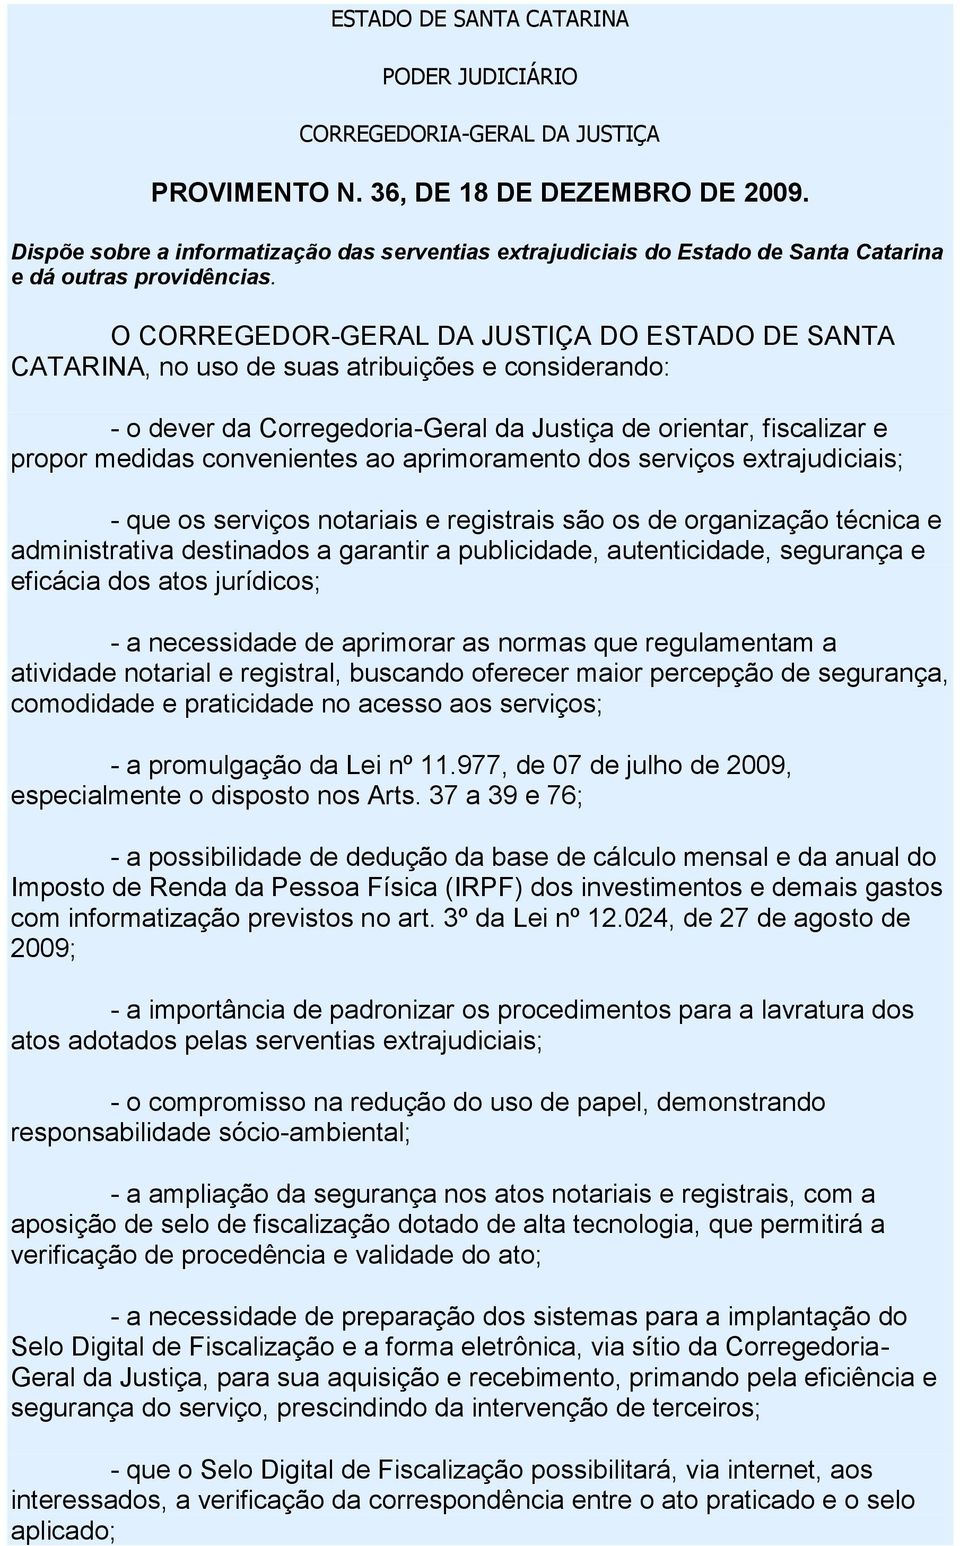 O CORREGEDOR-GERAL DA JUSTIÇA DO ESTADO DE SANTA CATARINA, no uso de suas atribuições e considerando: - o dever da Corregedoria-Geral da Justiça de orientar, fiscalizar e propor medidas convenientes